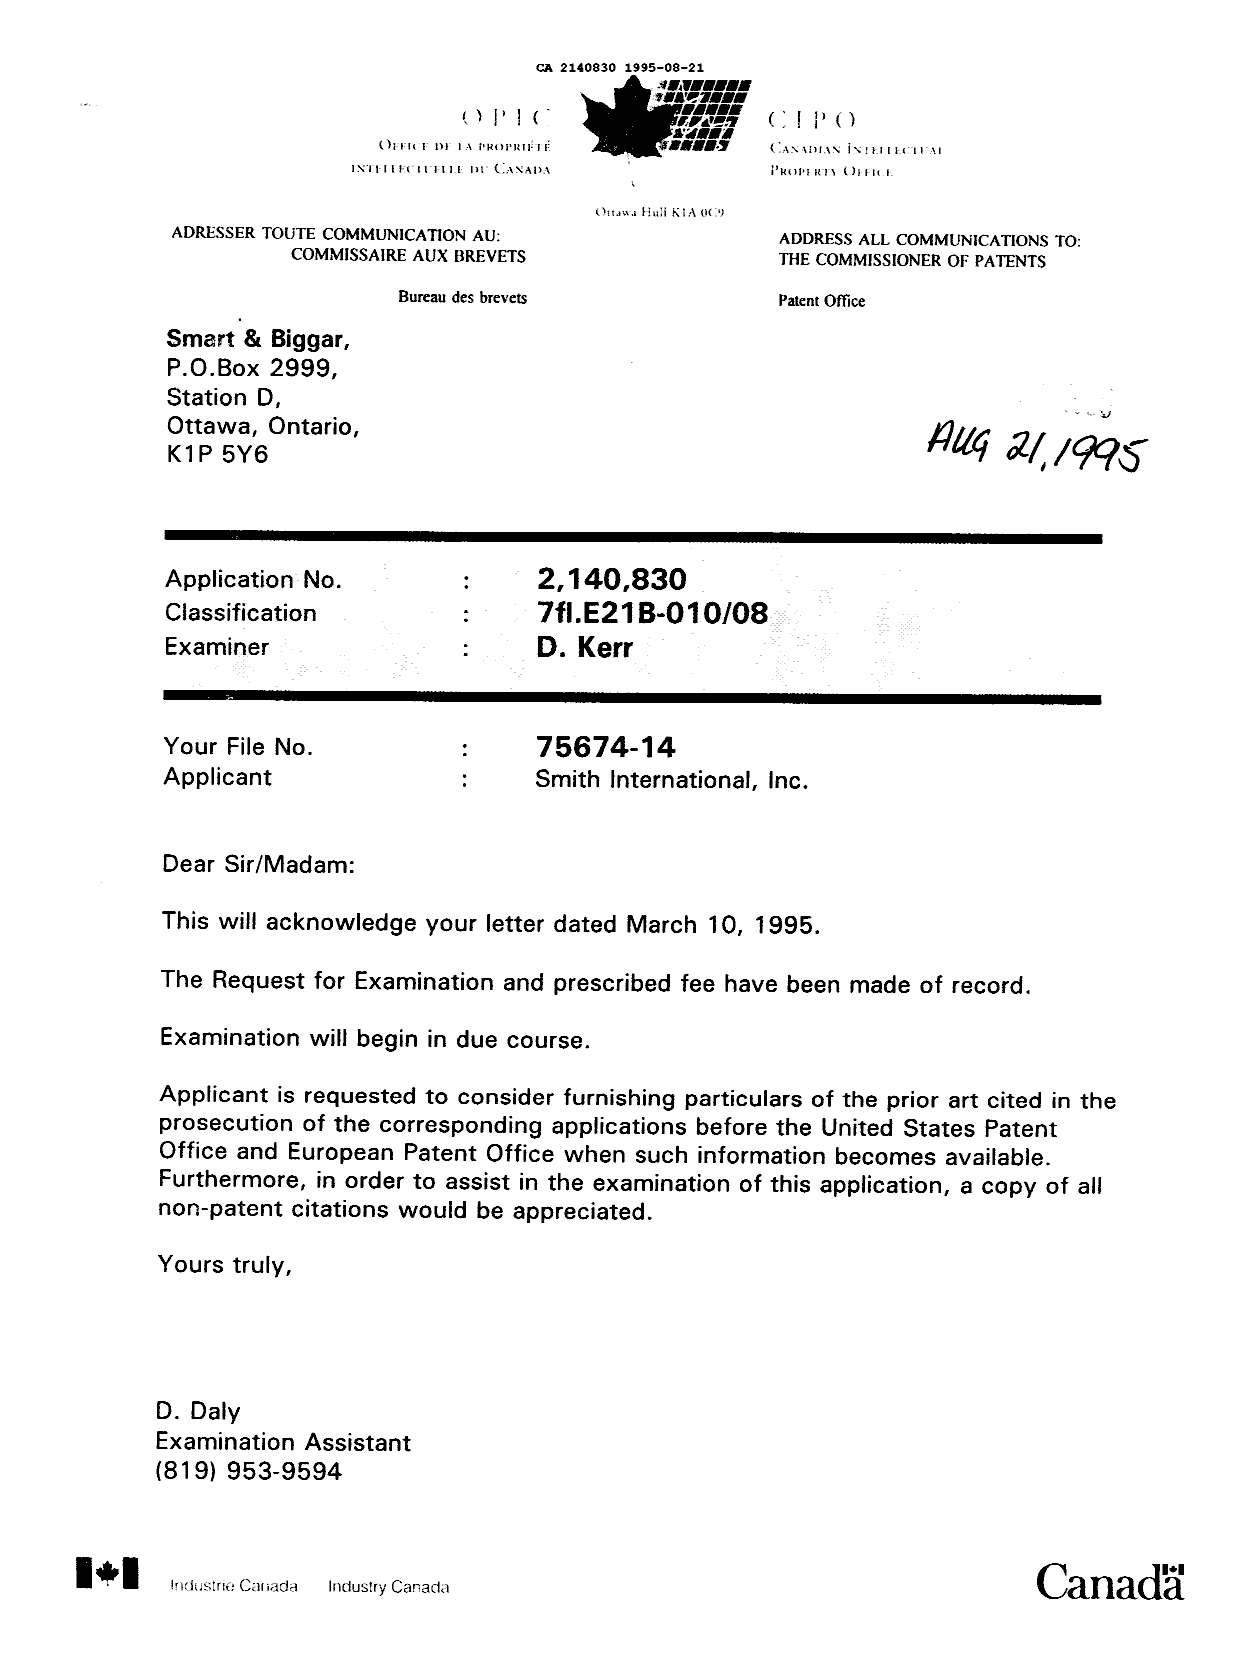 Document de brevet canadien 2140830. Lettre du bureau 19950821. Image 1 de 1